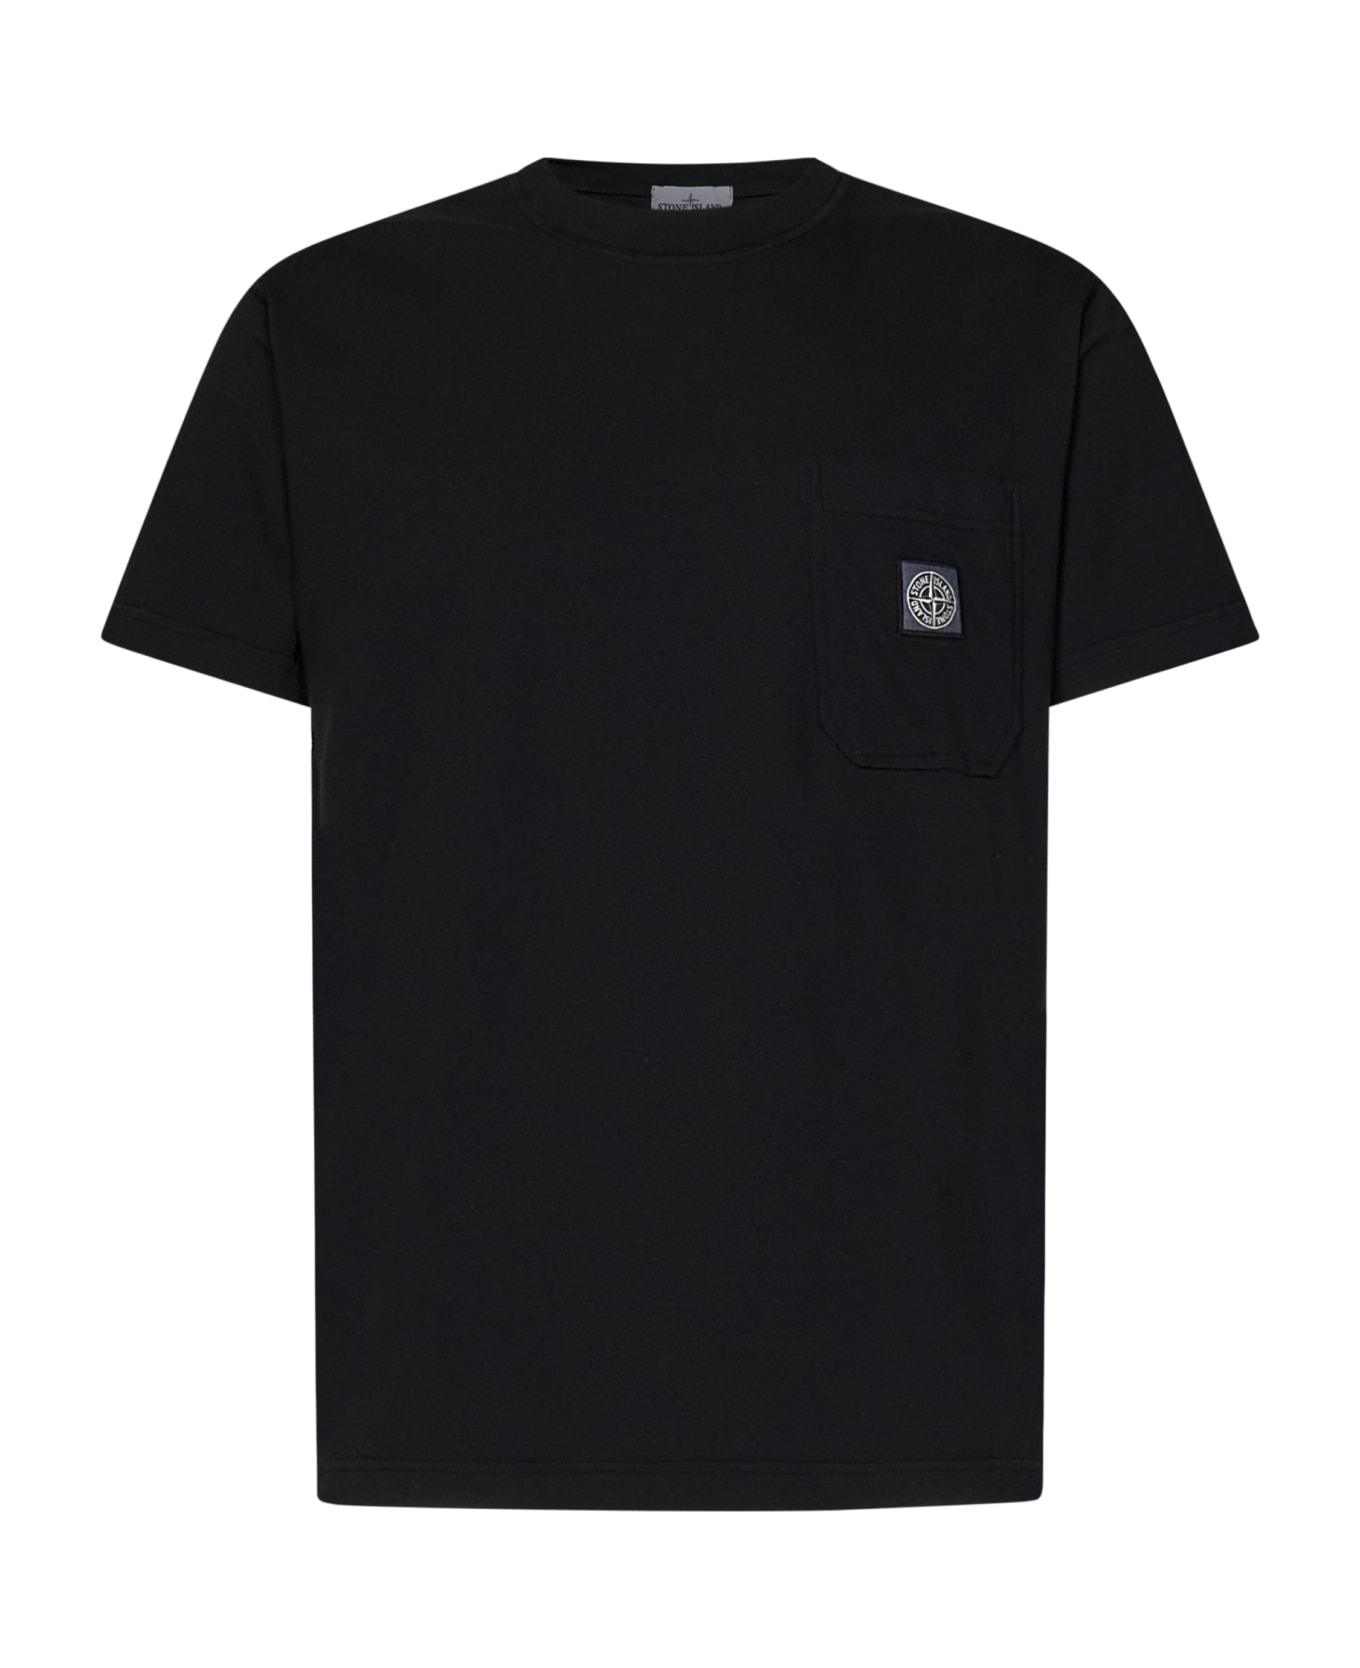 Stone Island T-shirt - Black シャツ